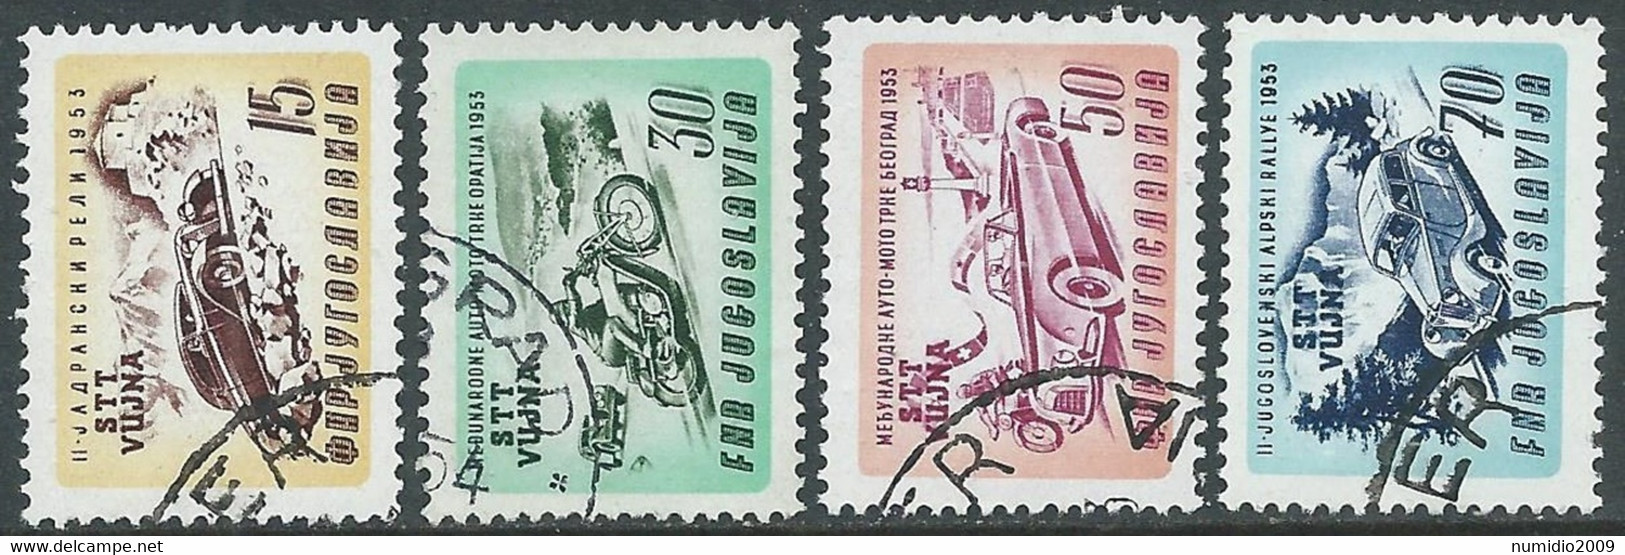 1953 TRIESTE B USATO CORSE AUTOMOTOCICLISTICHE 4 VALORI - RA10-9 - Gebraucht